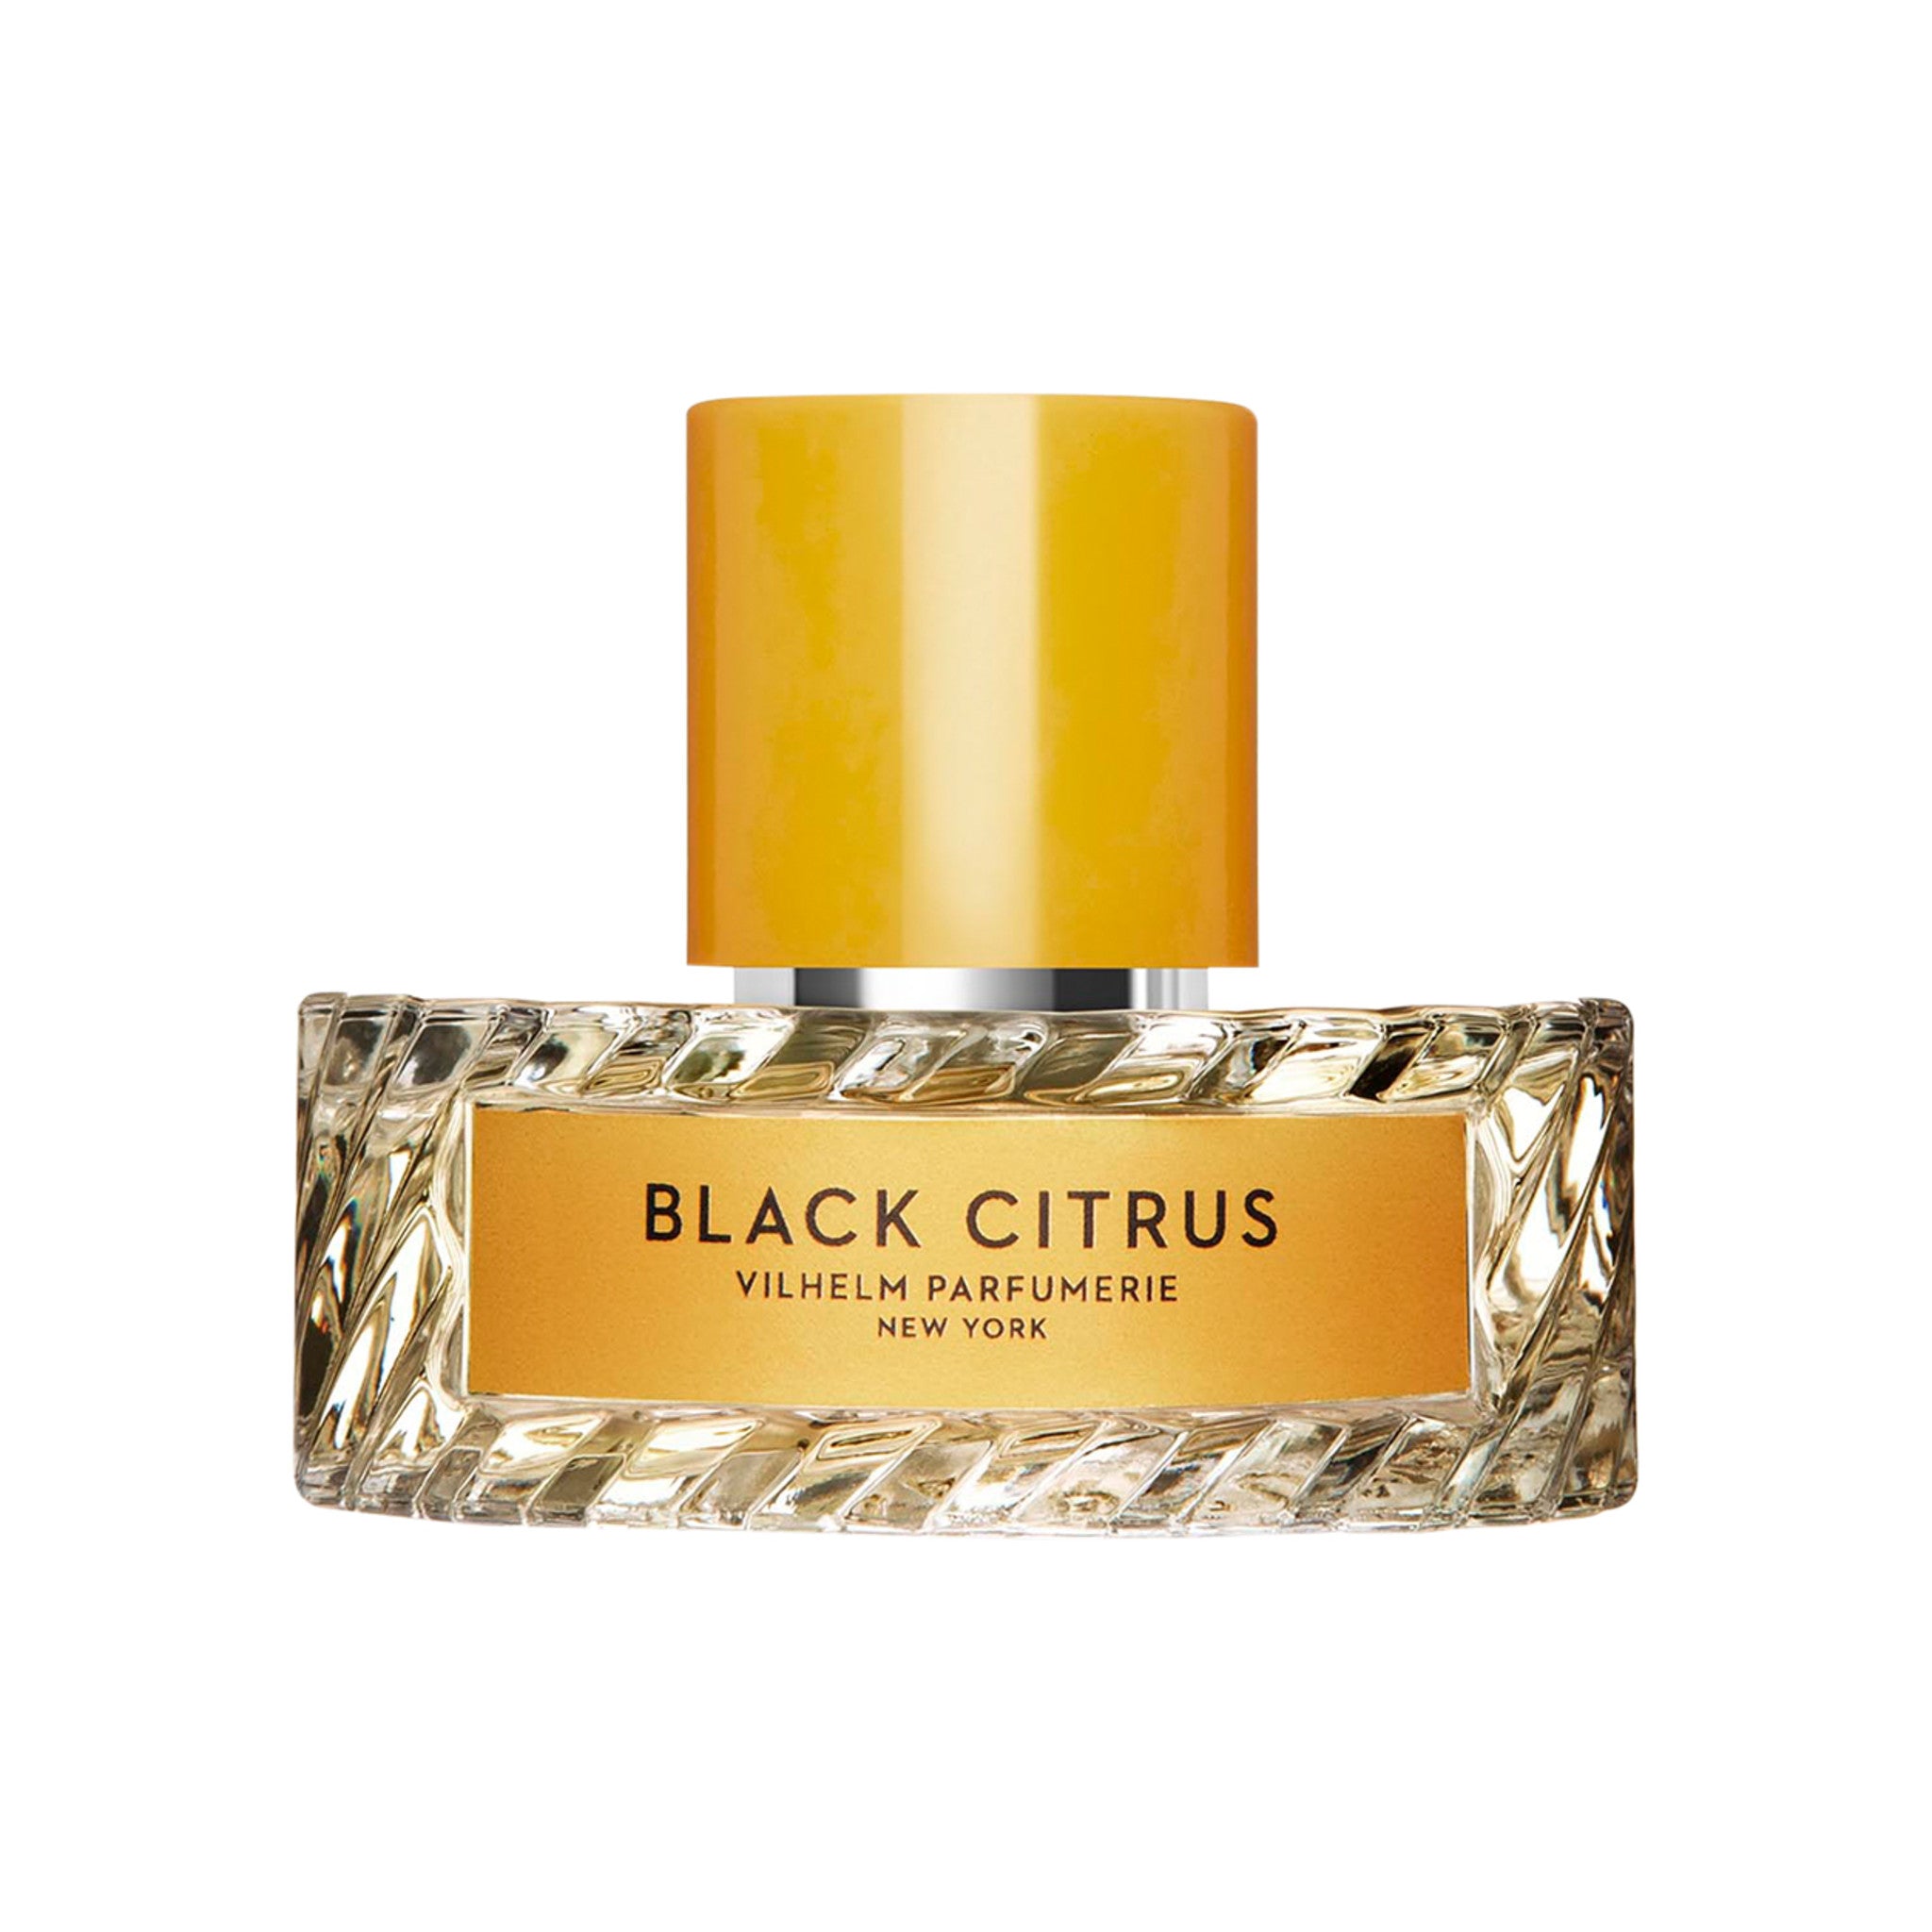 Vilhelm Parfumerie Black Citrus Eau de Parfum Size variant: 50 ml main image.